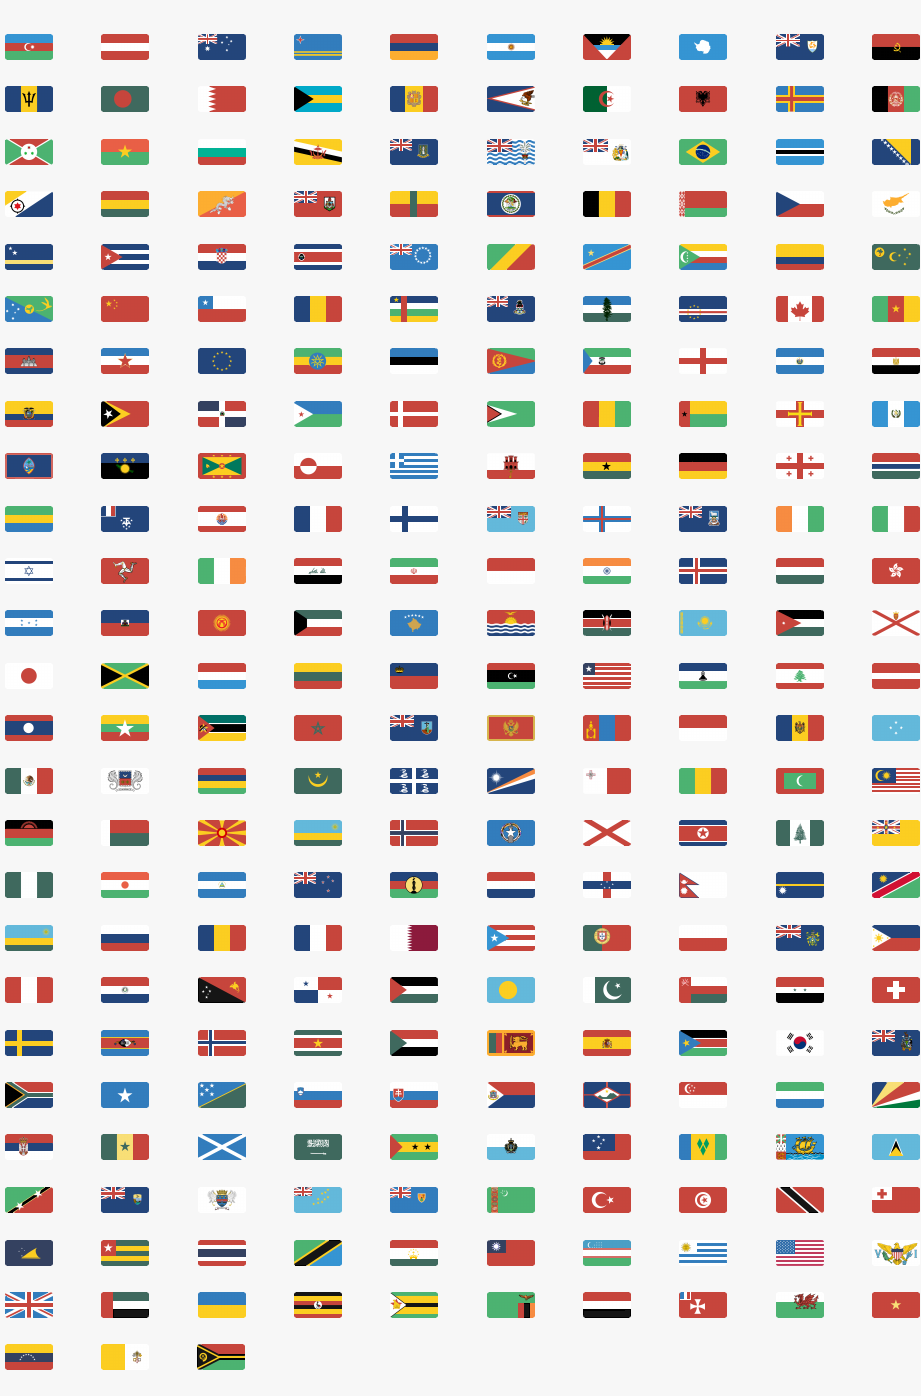 флаги городов картинки